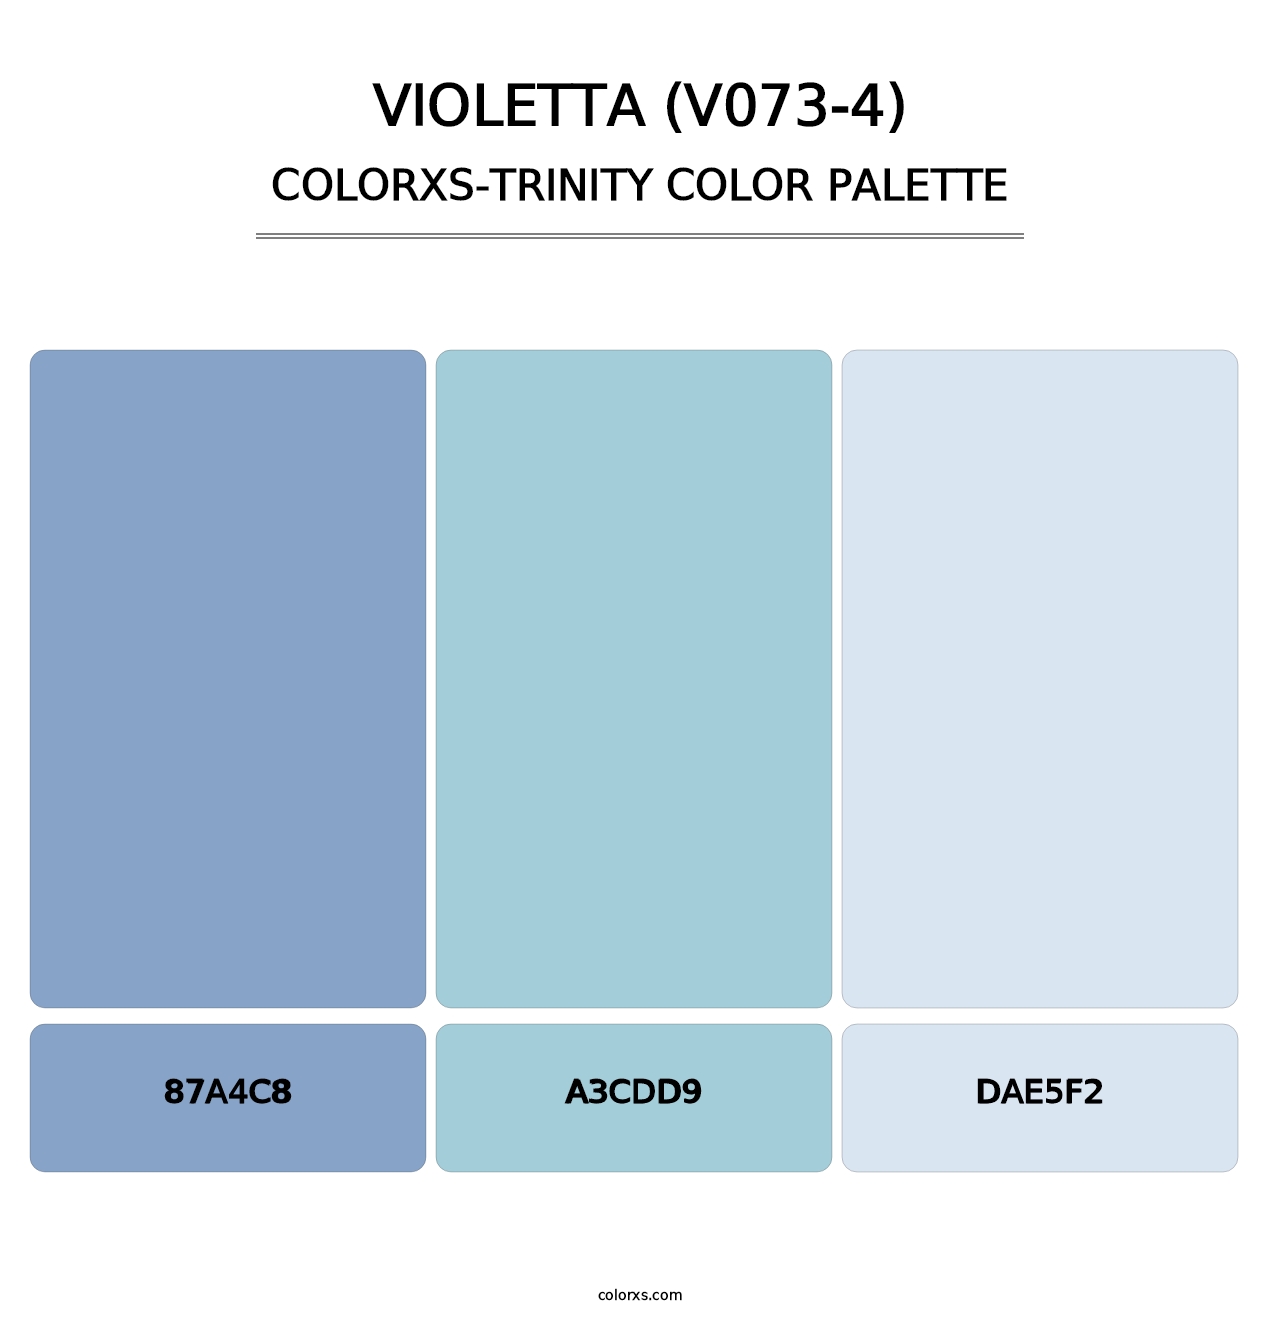 Violetta (V073-4) - Colorxs Trinity Palette